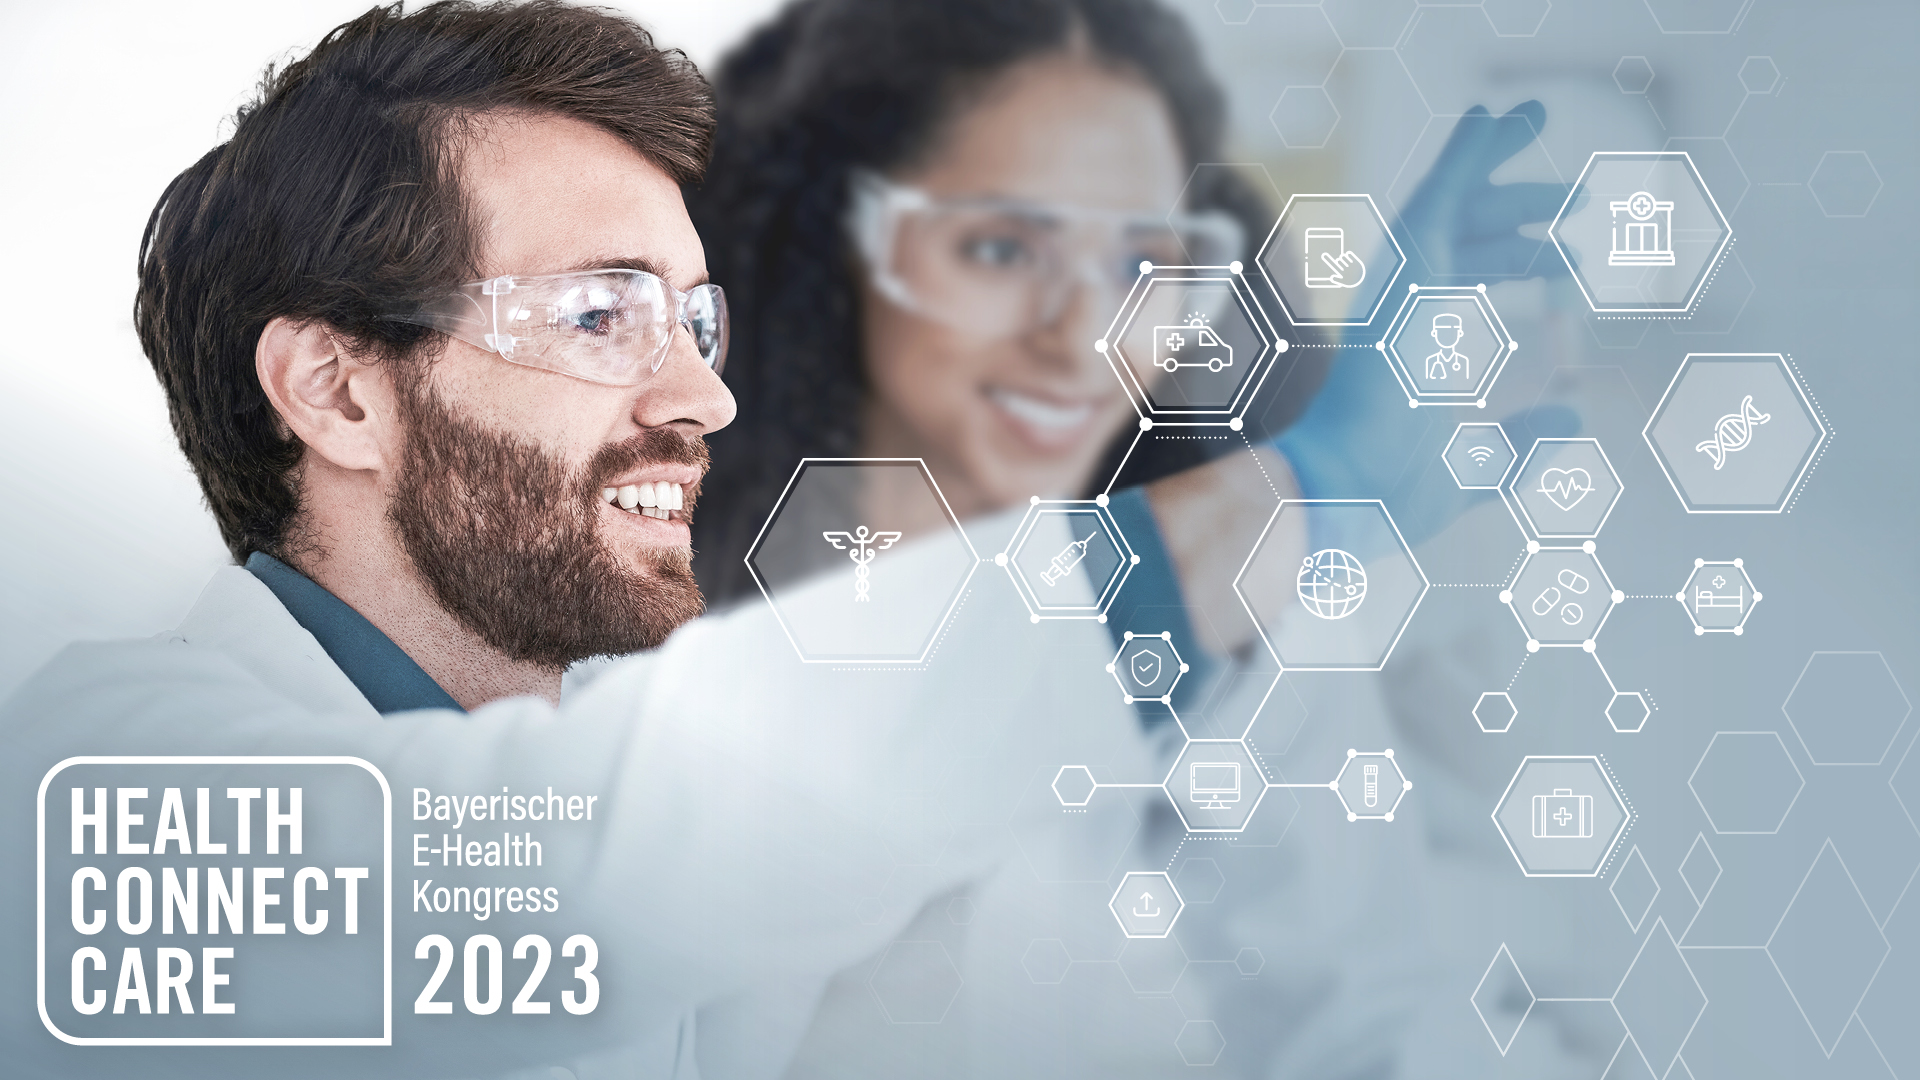 Bayerischer E-Health Kongress 2023